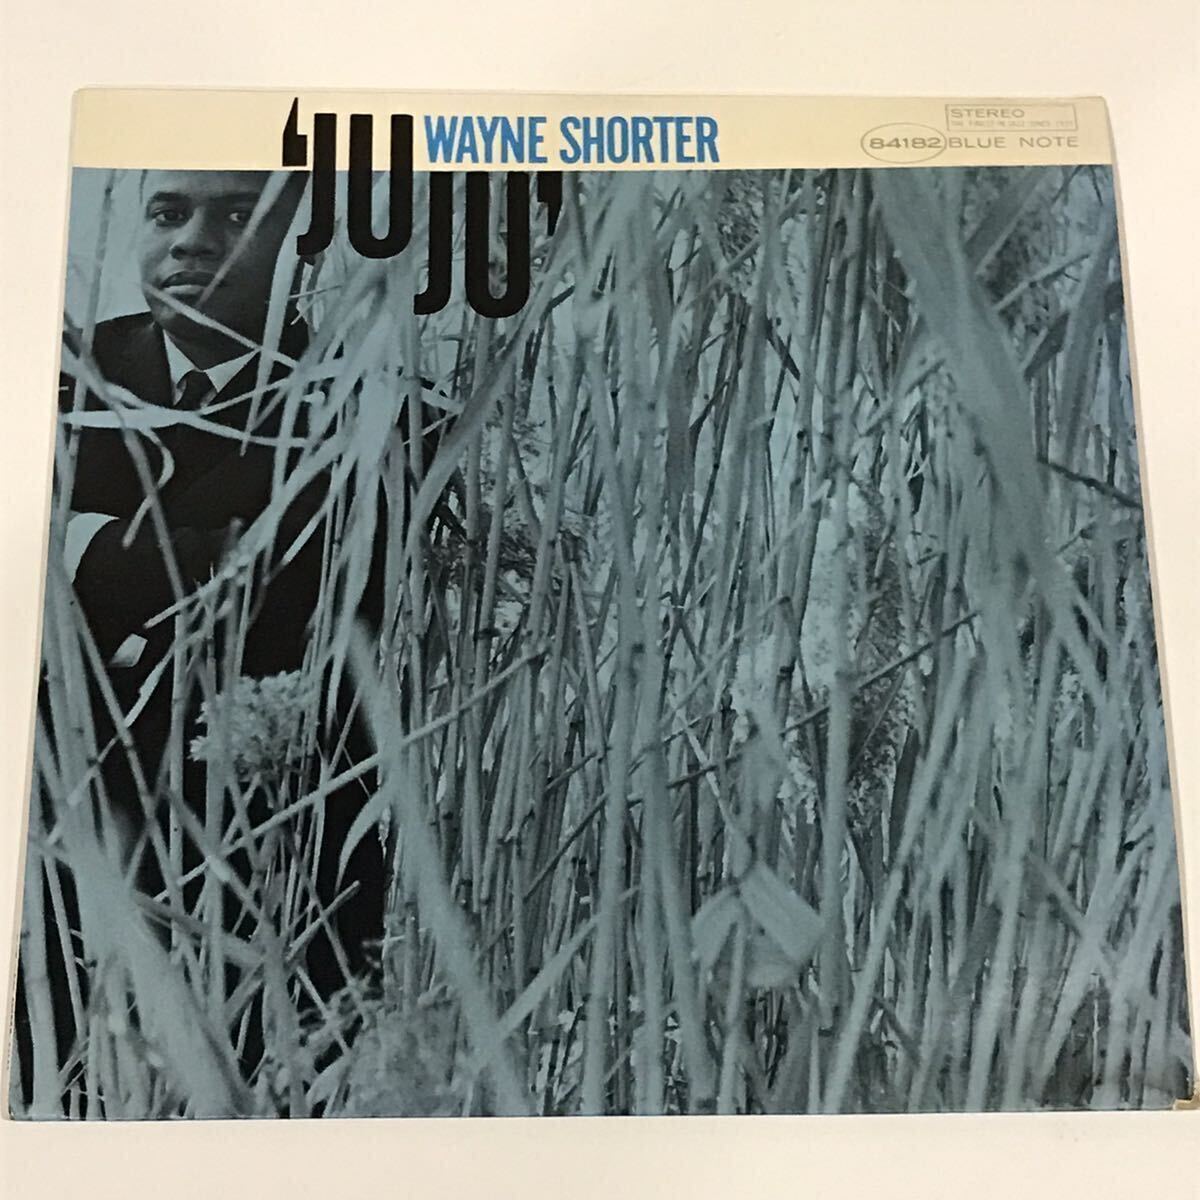 VAN GELDER刻印入りUS盤LIBERTYラベル WAYNE SHORTER / JUJU on BLUE NOTE RECORDS McCOY TYNER REGINALD WORKMAN ELVIN JONES_画像1